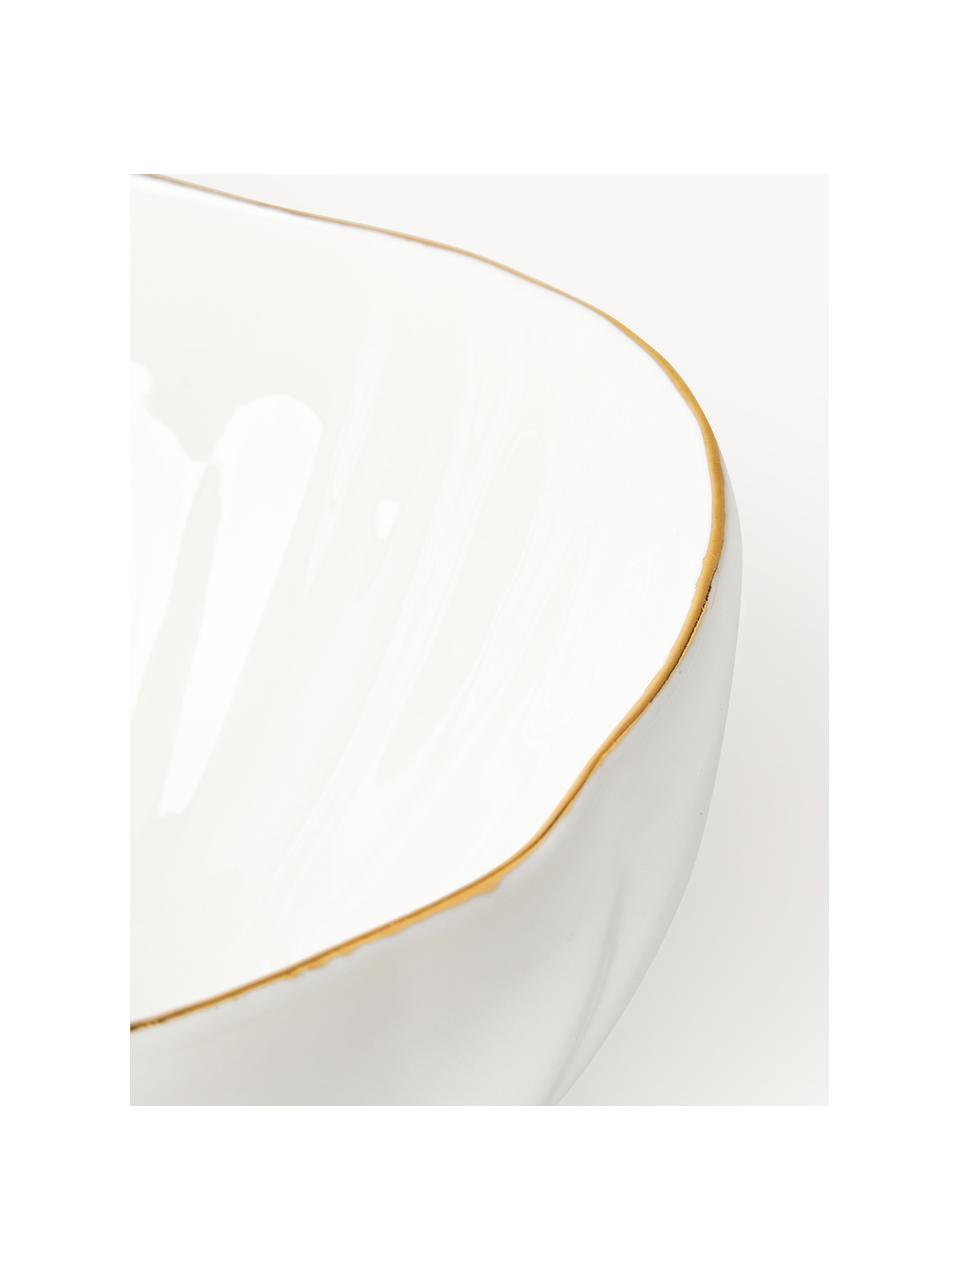 Schalen Sali mit Relief, 2 Stück, Porzellan, glasiert, Weiß mit goldenem Rand, Ø 17 x H 8 cm